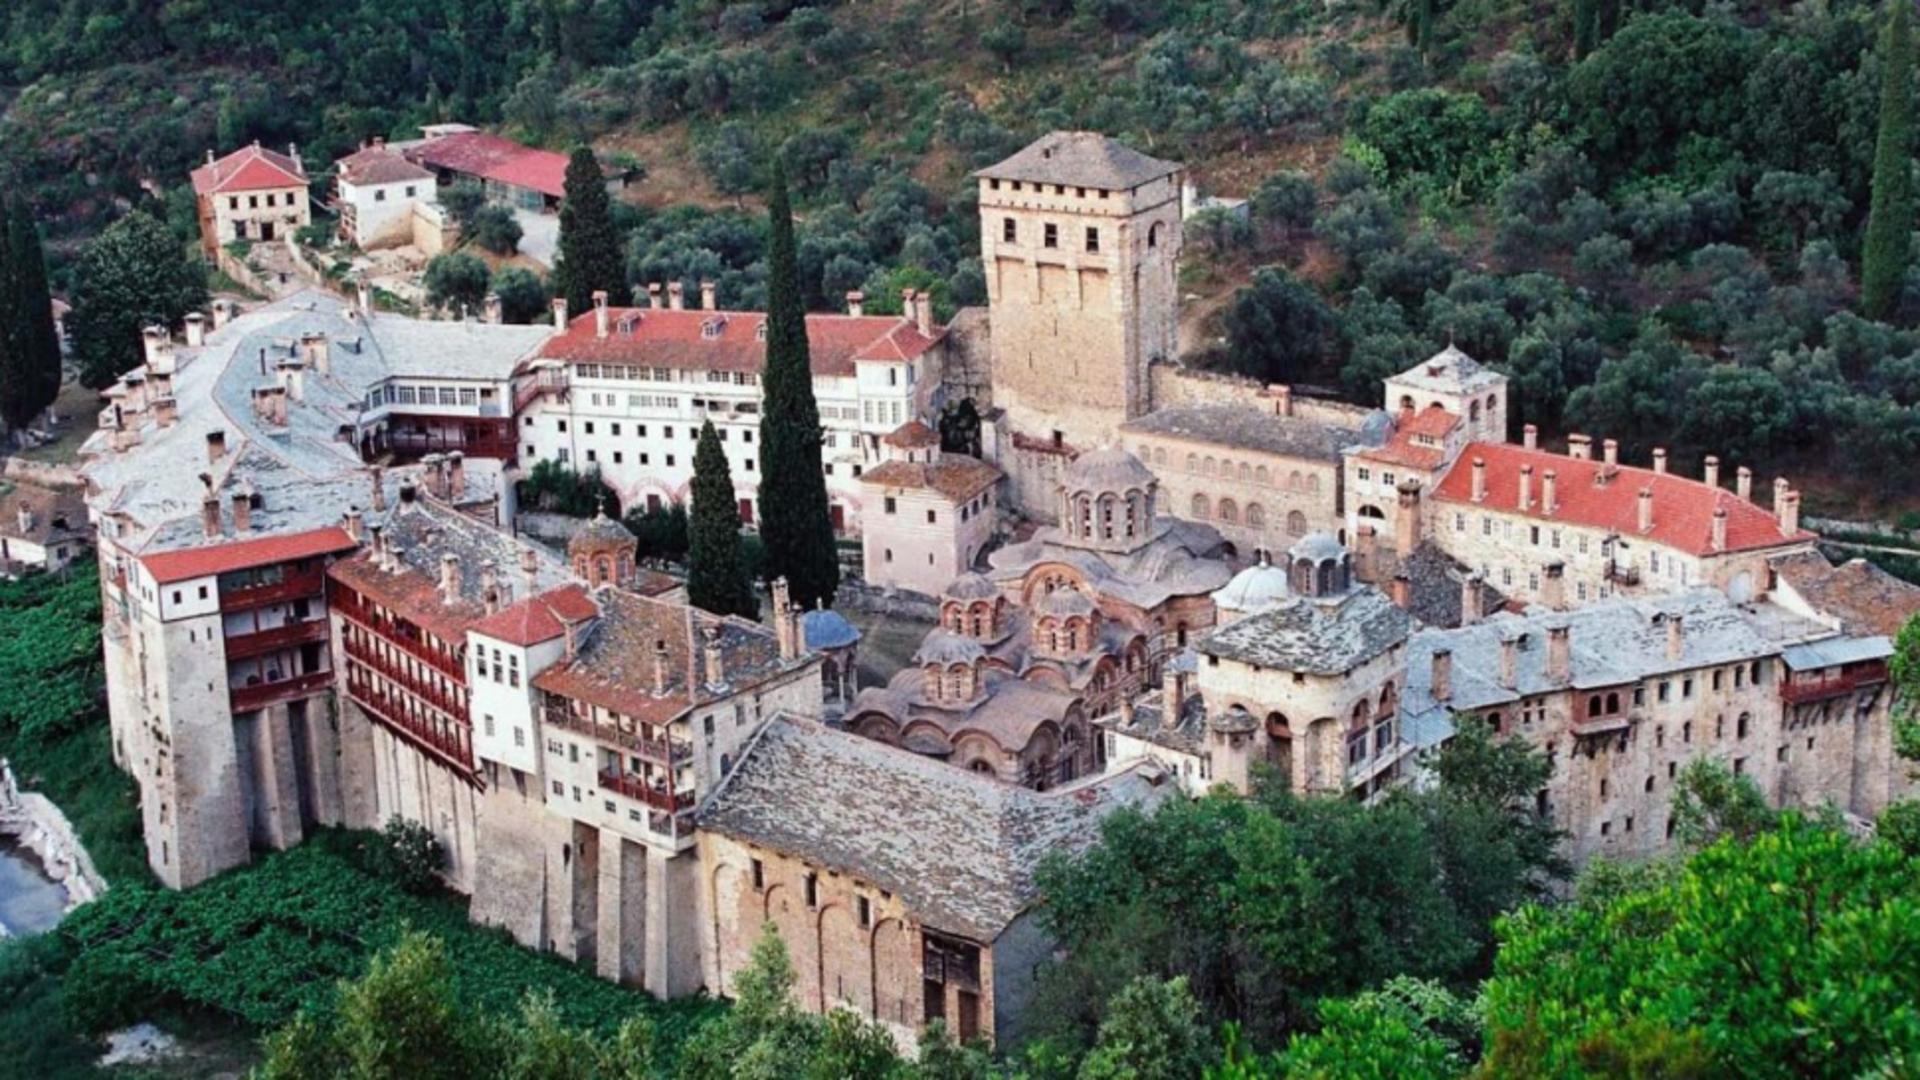  Mănăstirea Sârbă Hilandar, locul unde s-a întâmplat incidentul cu călugărul român